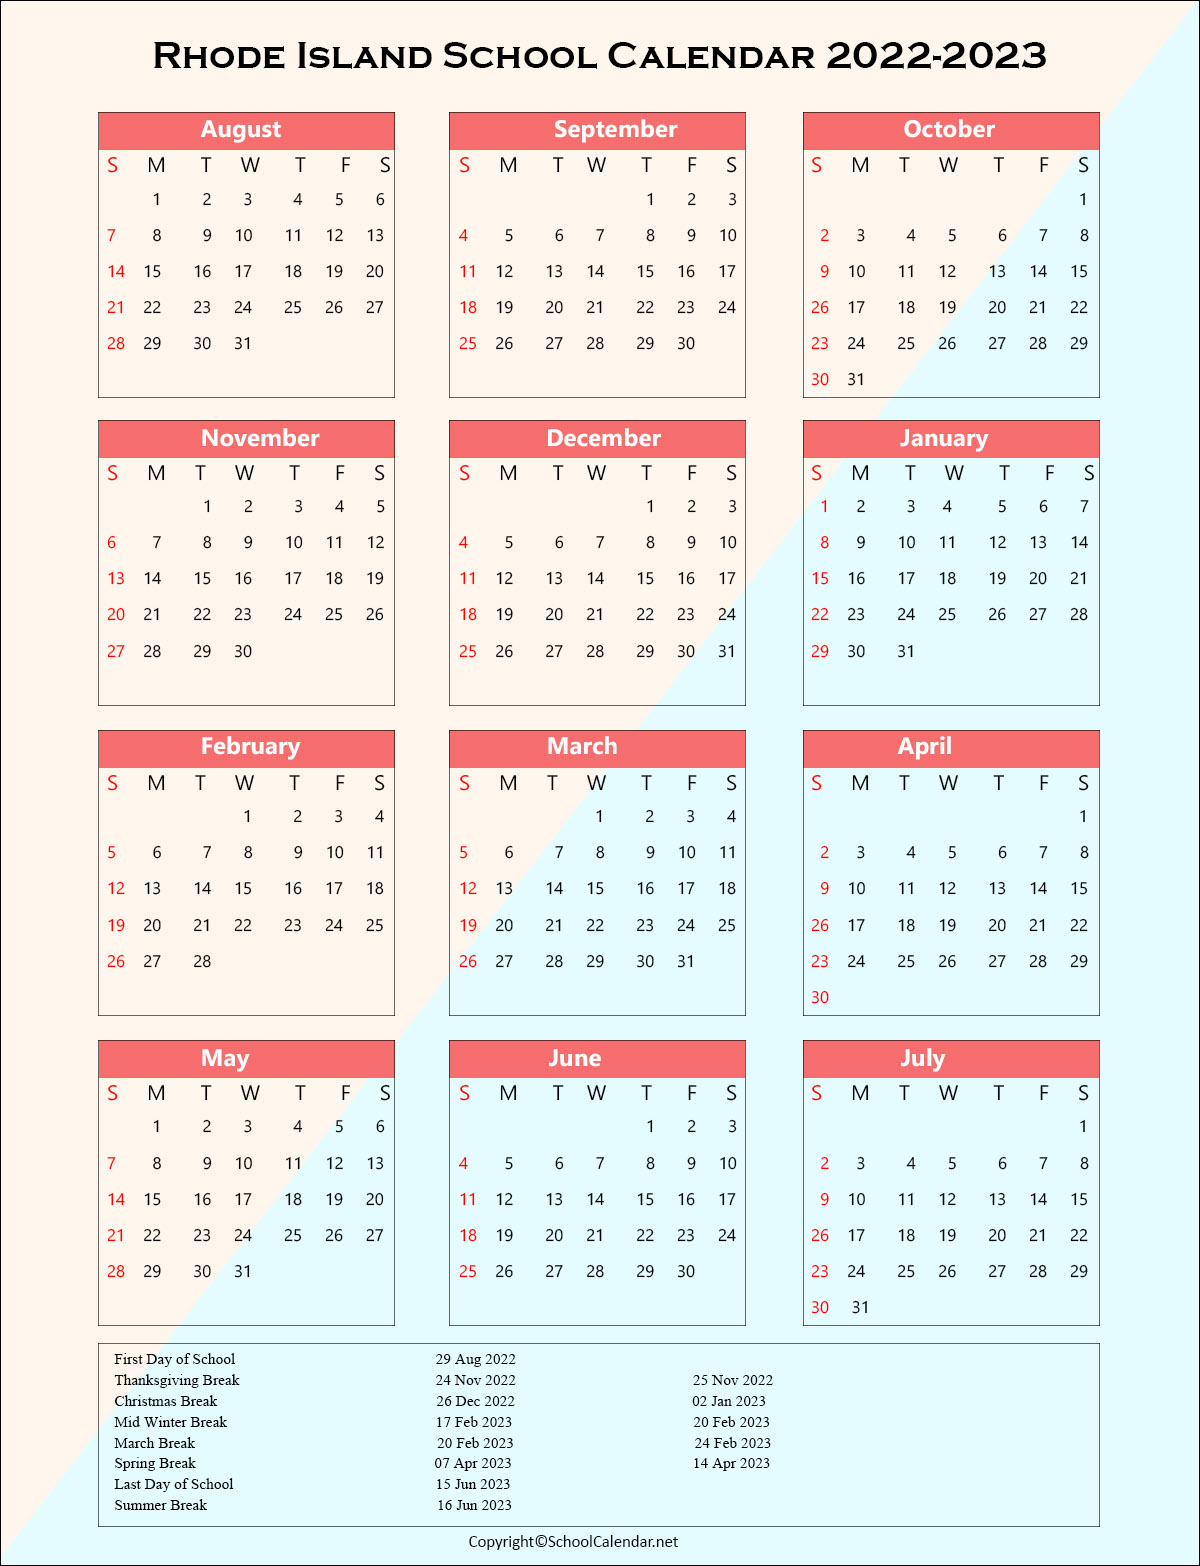 Rhode-Island School Holiday Calendar 2022